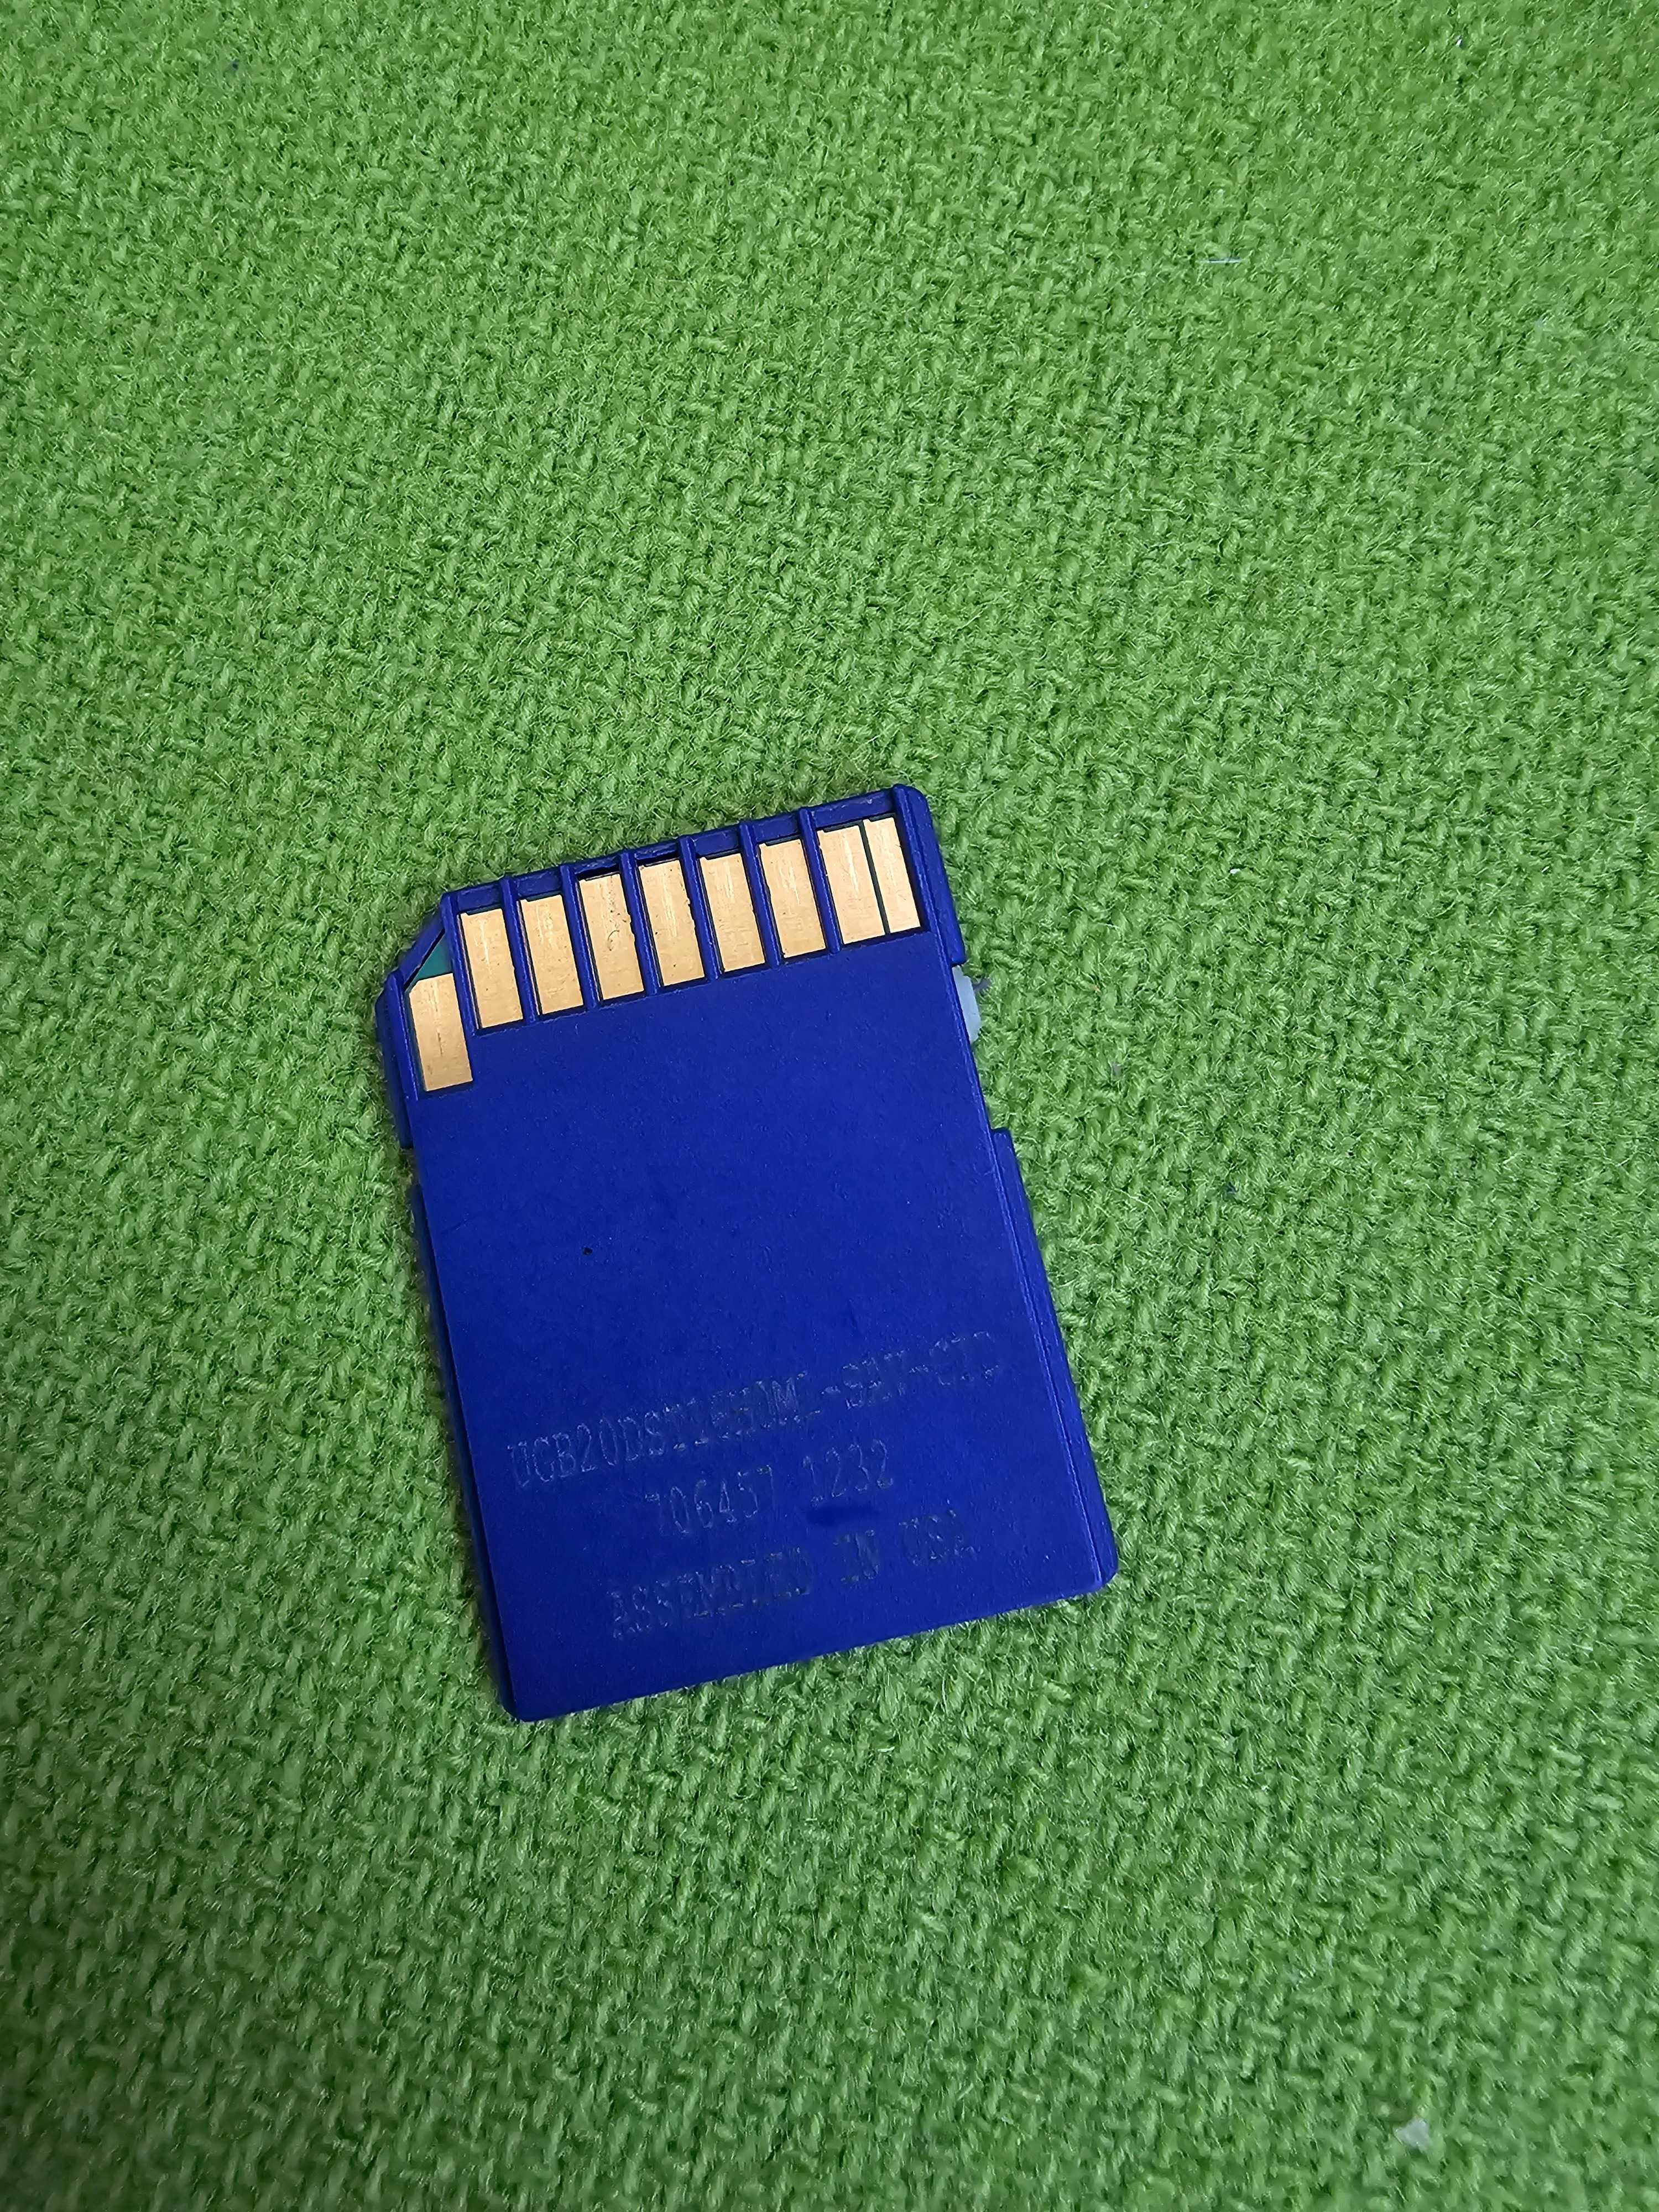 Card memorie SD 16gb / ORIGINAL Cisco